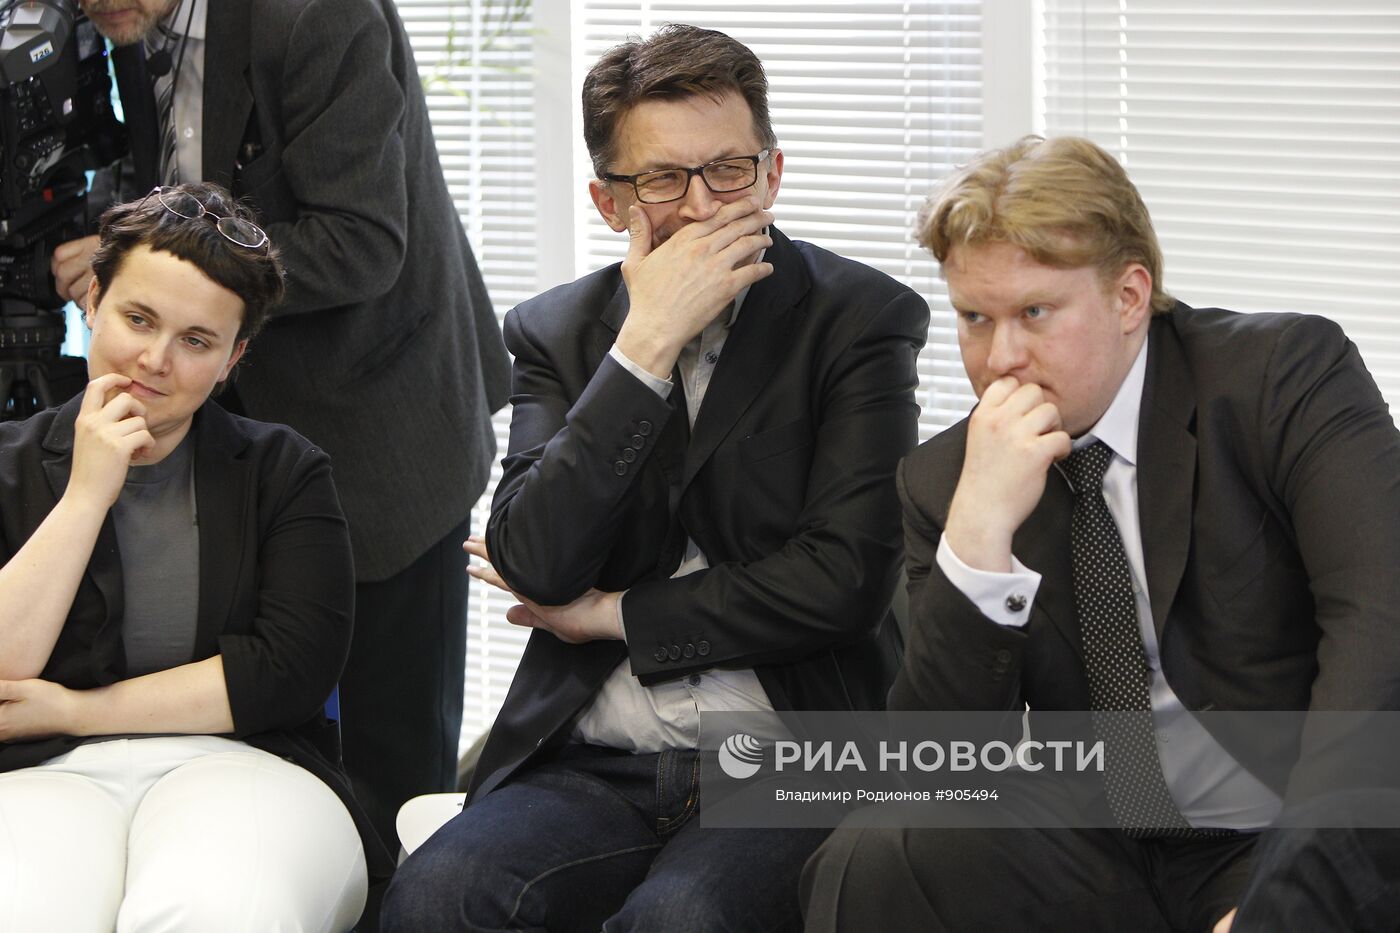 Представители интернет-сообществ на встрече с президентом РФ